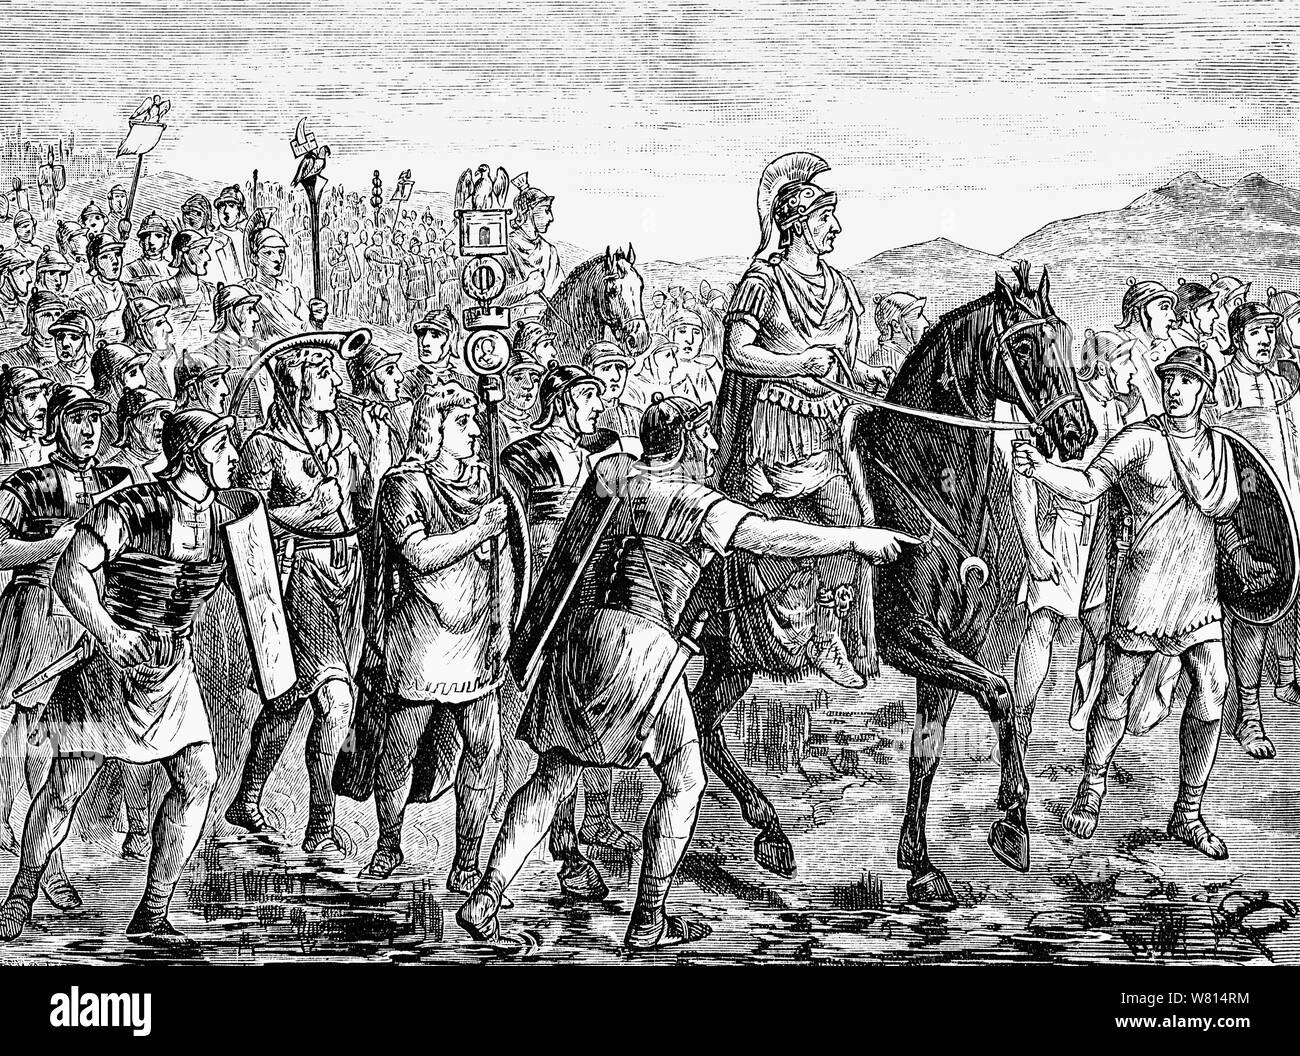 Jules César traverse le Rubicon, au sud de Ravenne, en Italie du Nord, un événement qui a précipité la Grande Guerre civile romaine, et conduit à devenir César dictateur et l'augmentation de l'époque impériale de Rome. César avait été nommé à un poste de gouverneur de la Gaule du Sud d'Illyrie. Lorsque son mandat a pris fin, le Sénat romain César a ordonné de retourner à Rome et de ne pas présenter son armée à travers le Rubicon, la limite nord de l'Italie. En 49 avant J.-C., César et la 13ème Légion traversa la riverr. Aujourd'hui, 'La Traversée du Rubicon' est une métaphore qui signifie d'adopter un point de non-retour. Banque D'Images